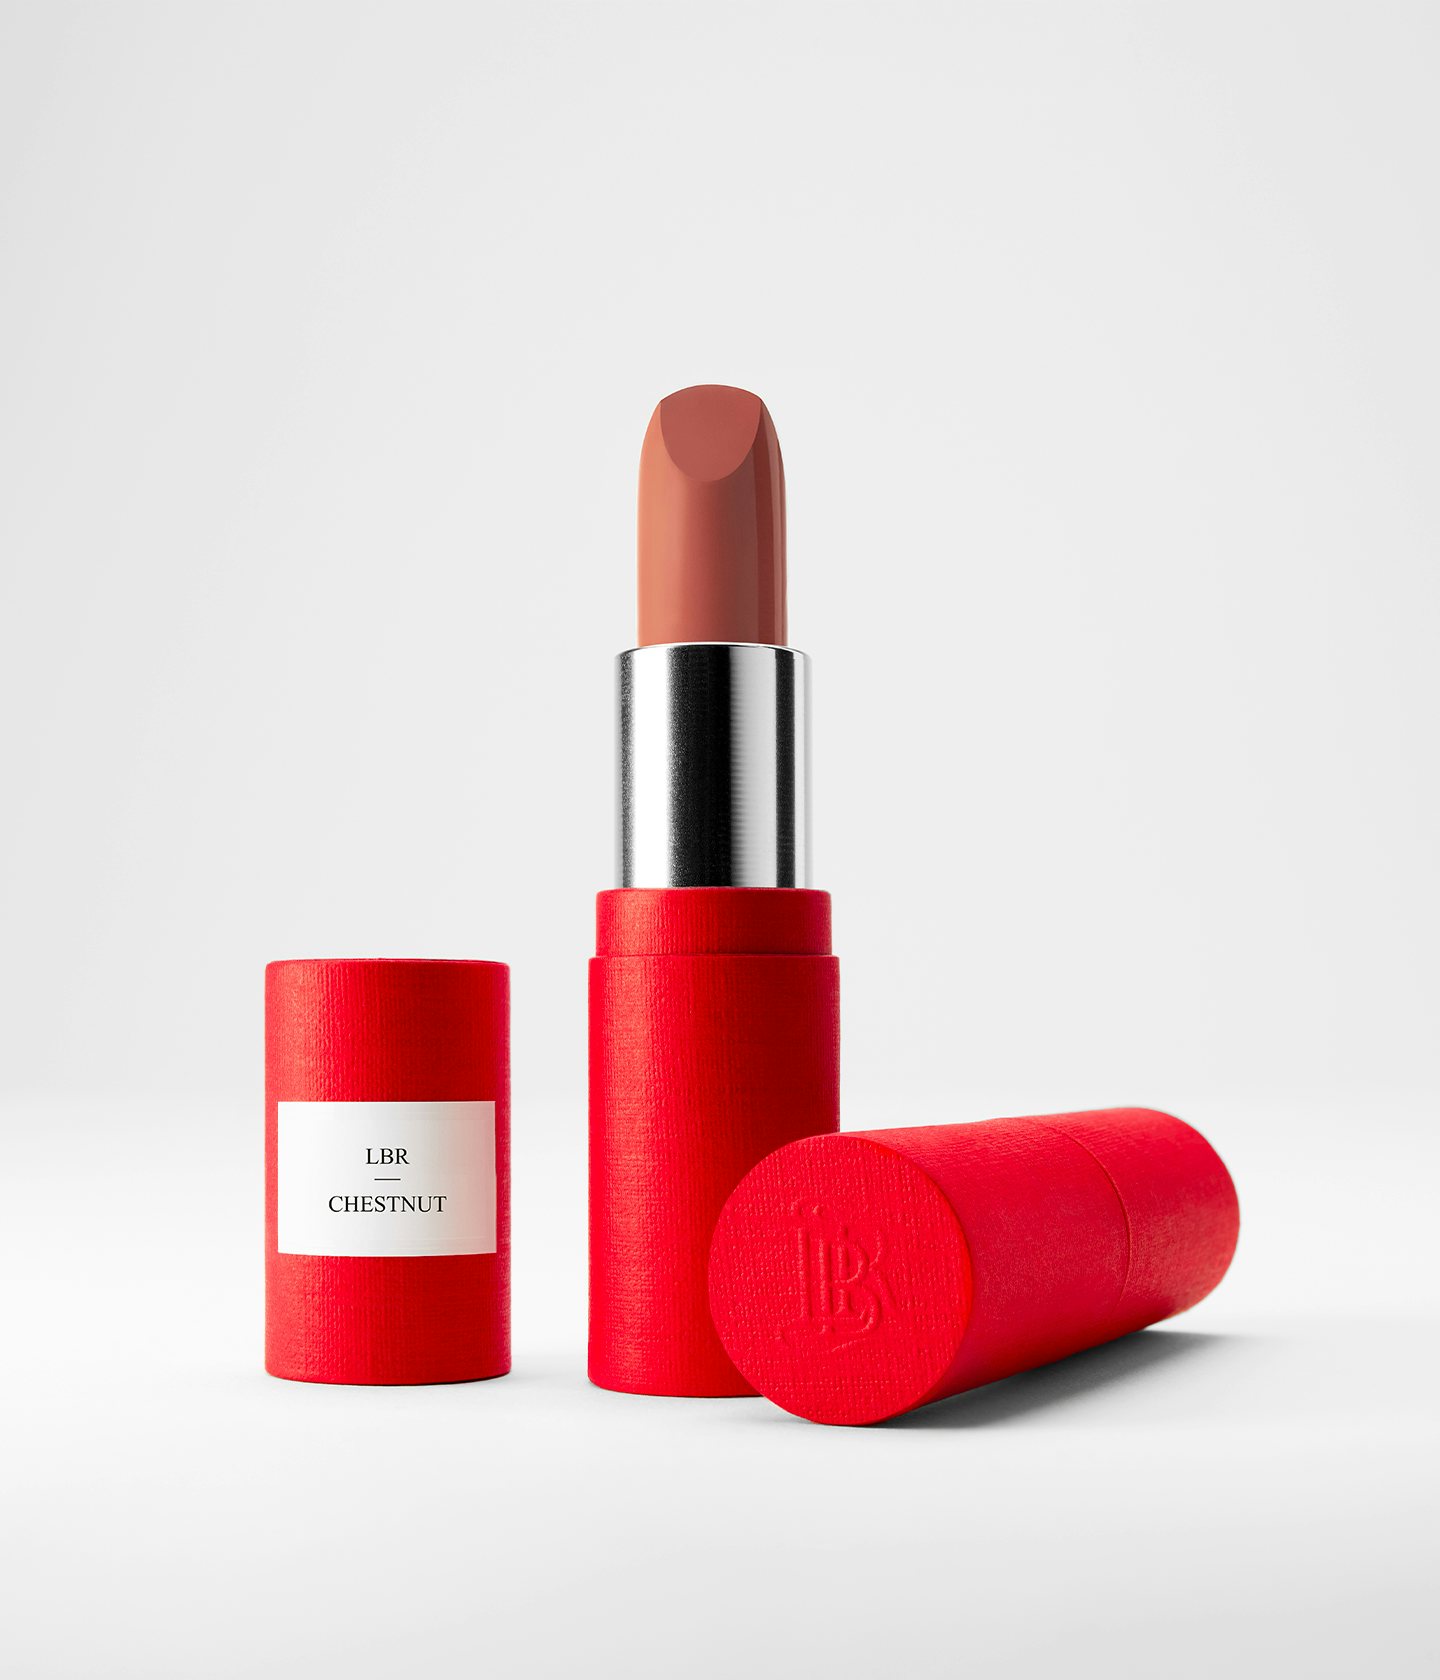 La bouche rouge Chestnut lipstick in the red paper case